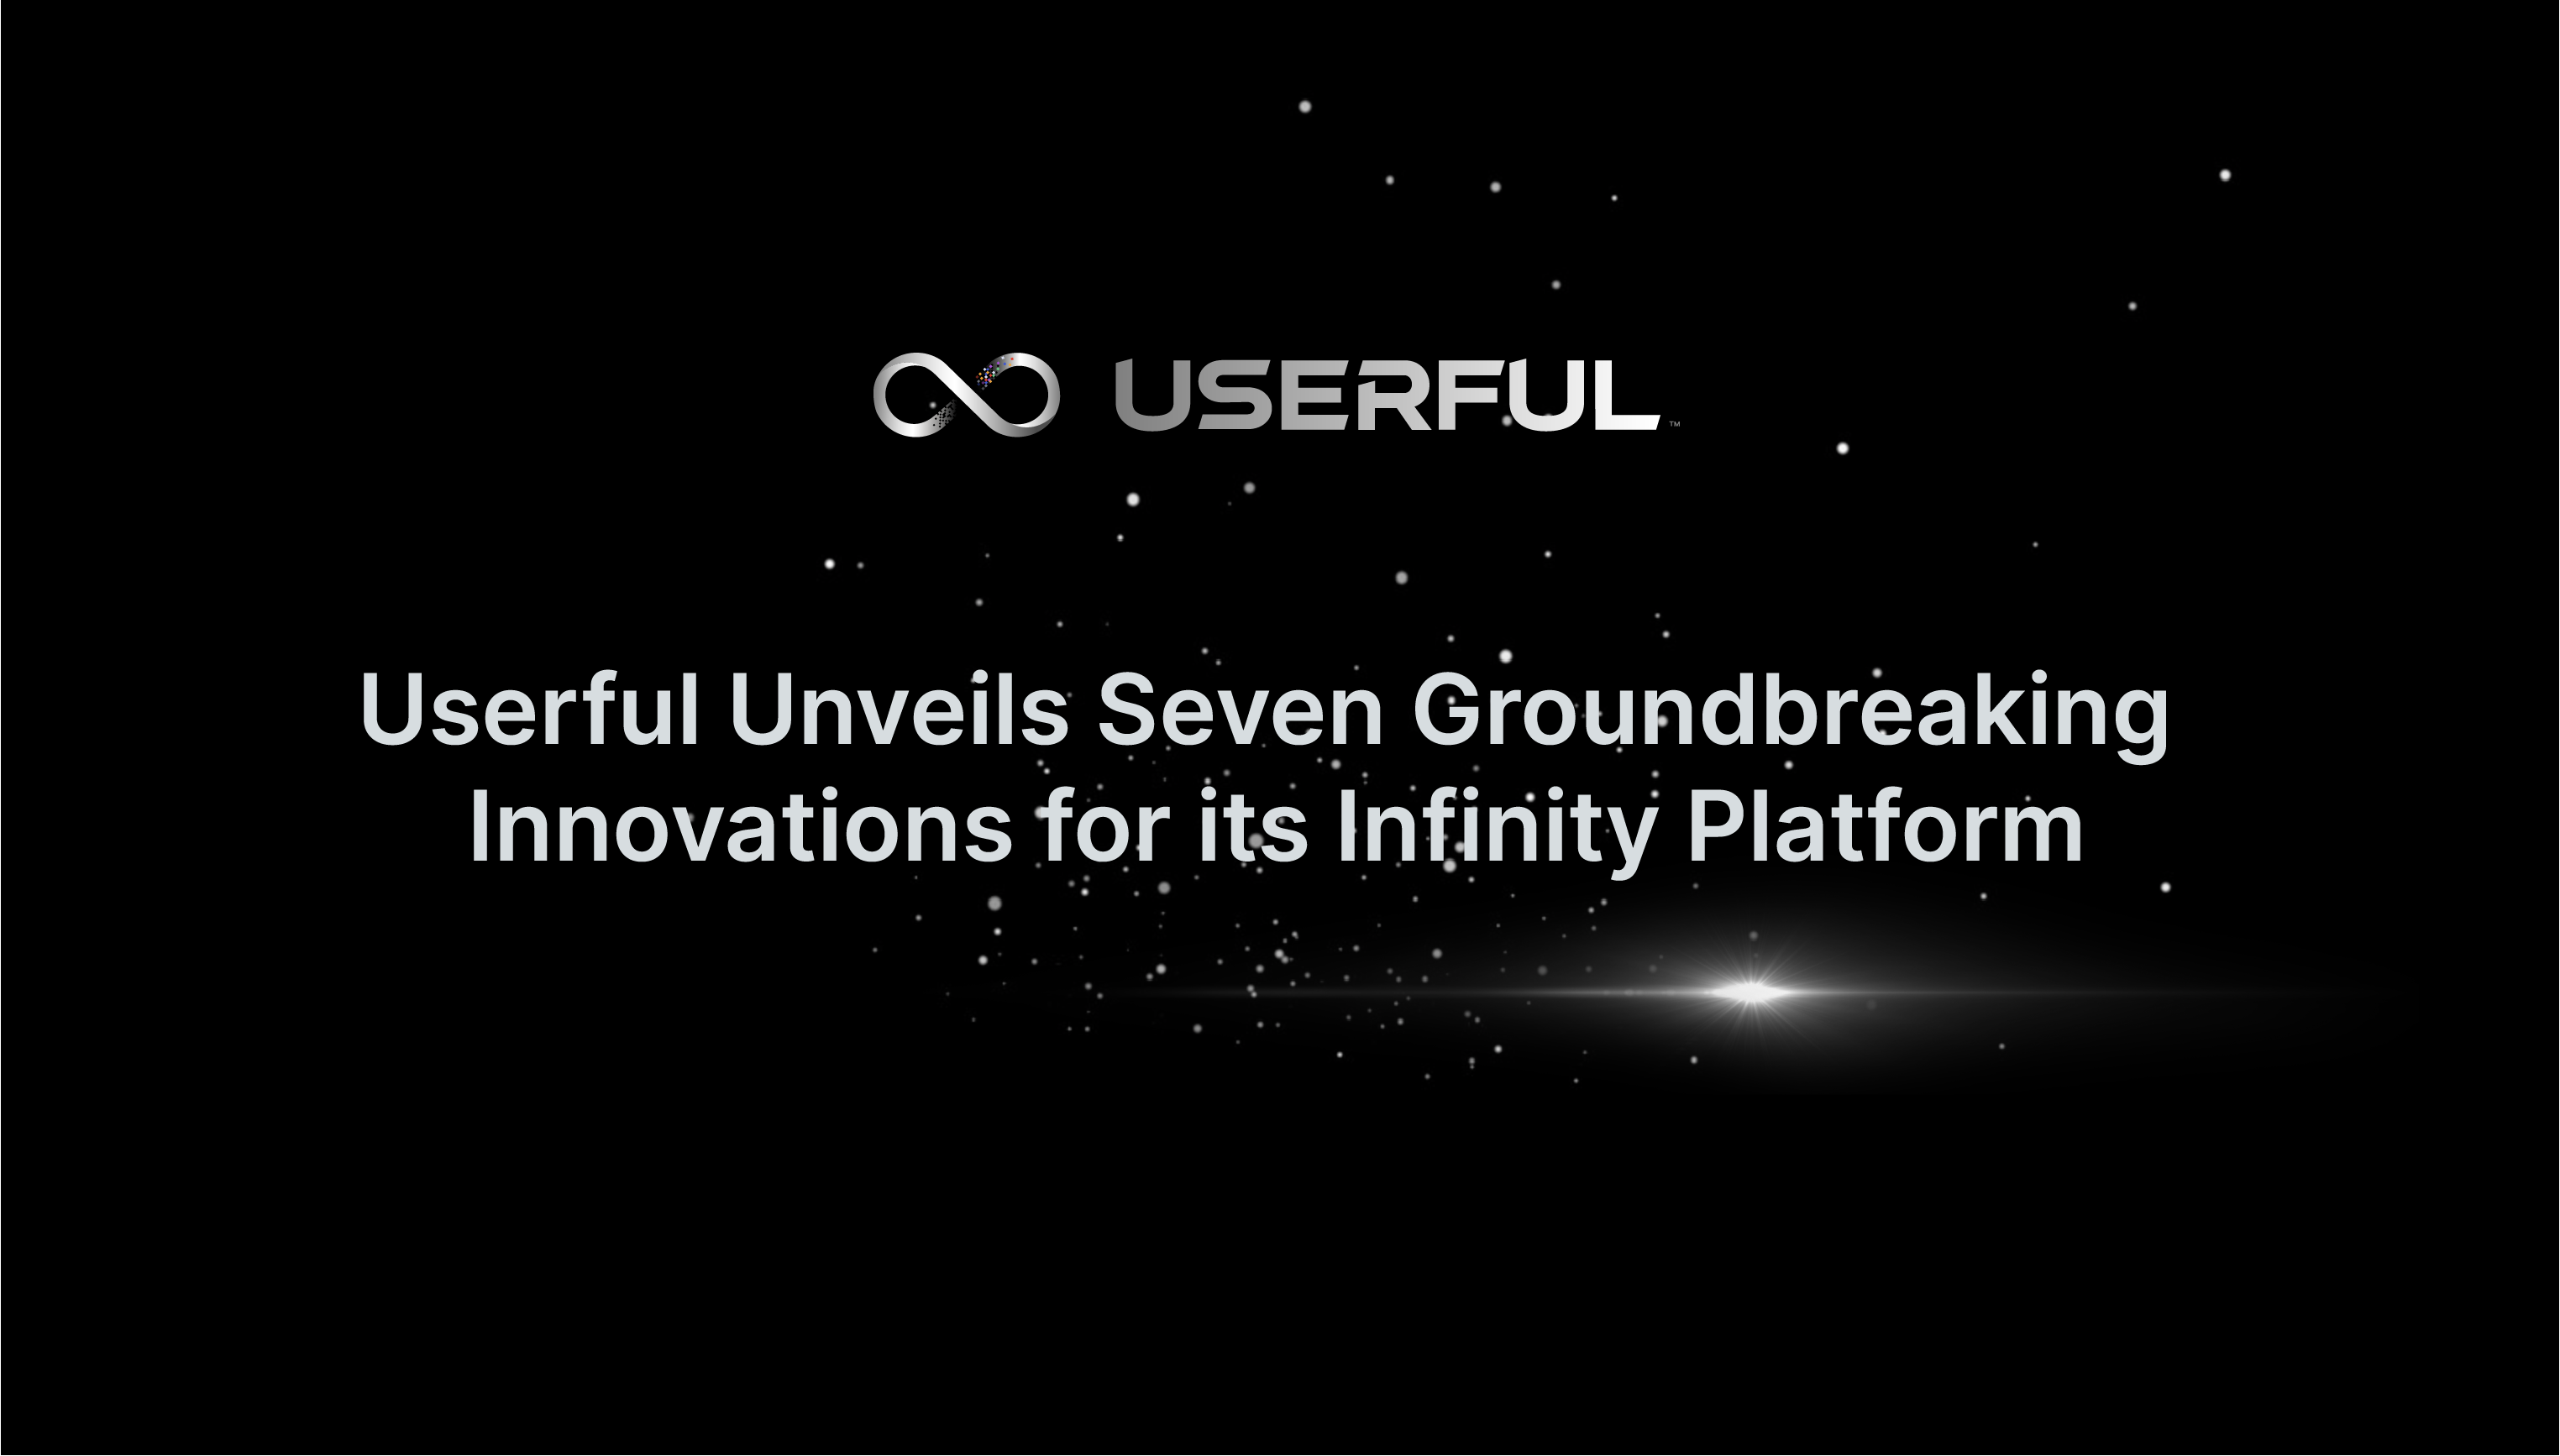 Userful presenta siete innovaciones revolucionarias para su plataforma Infinity, ampliando su liderazgo en AV empresarial sobre IP 